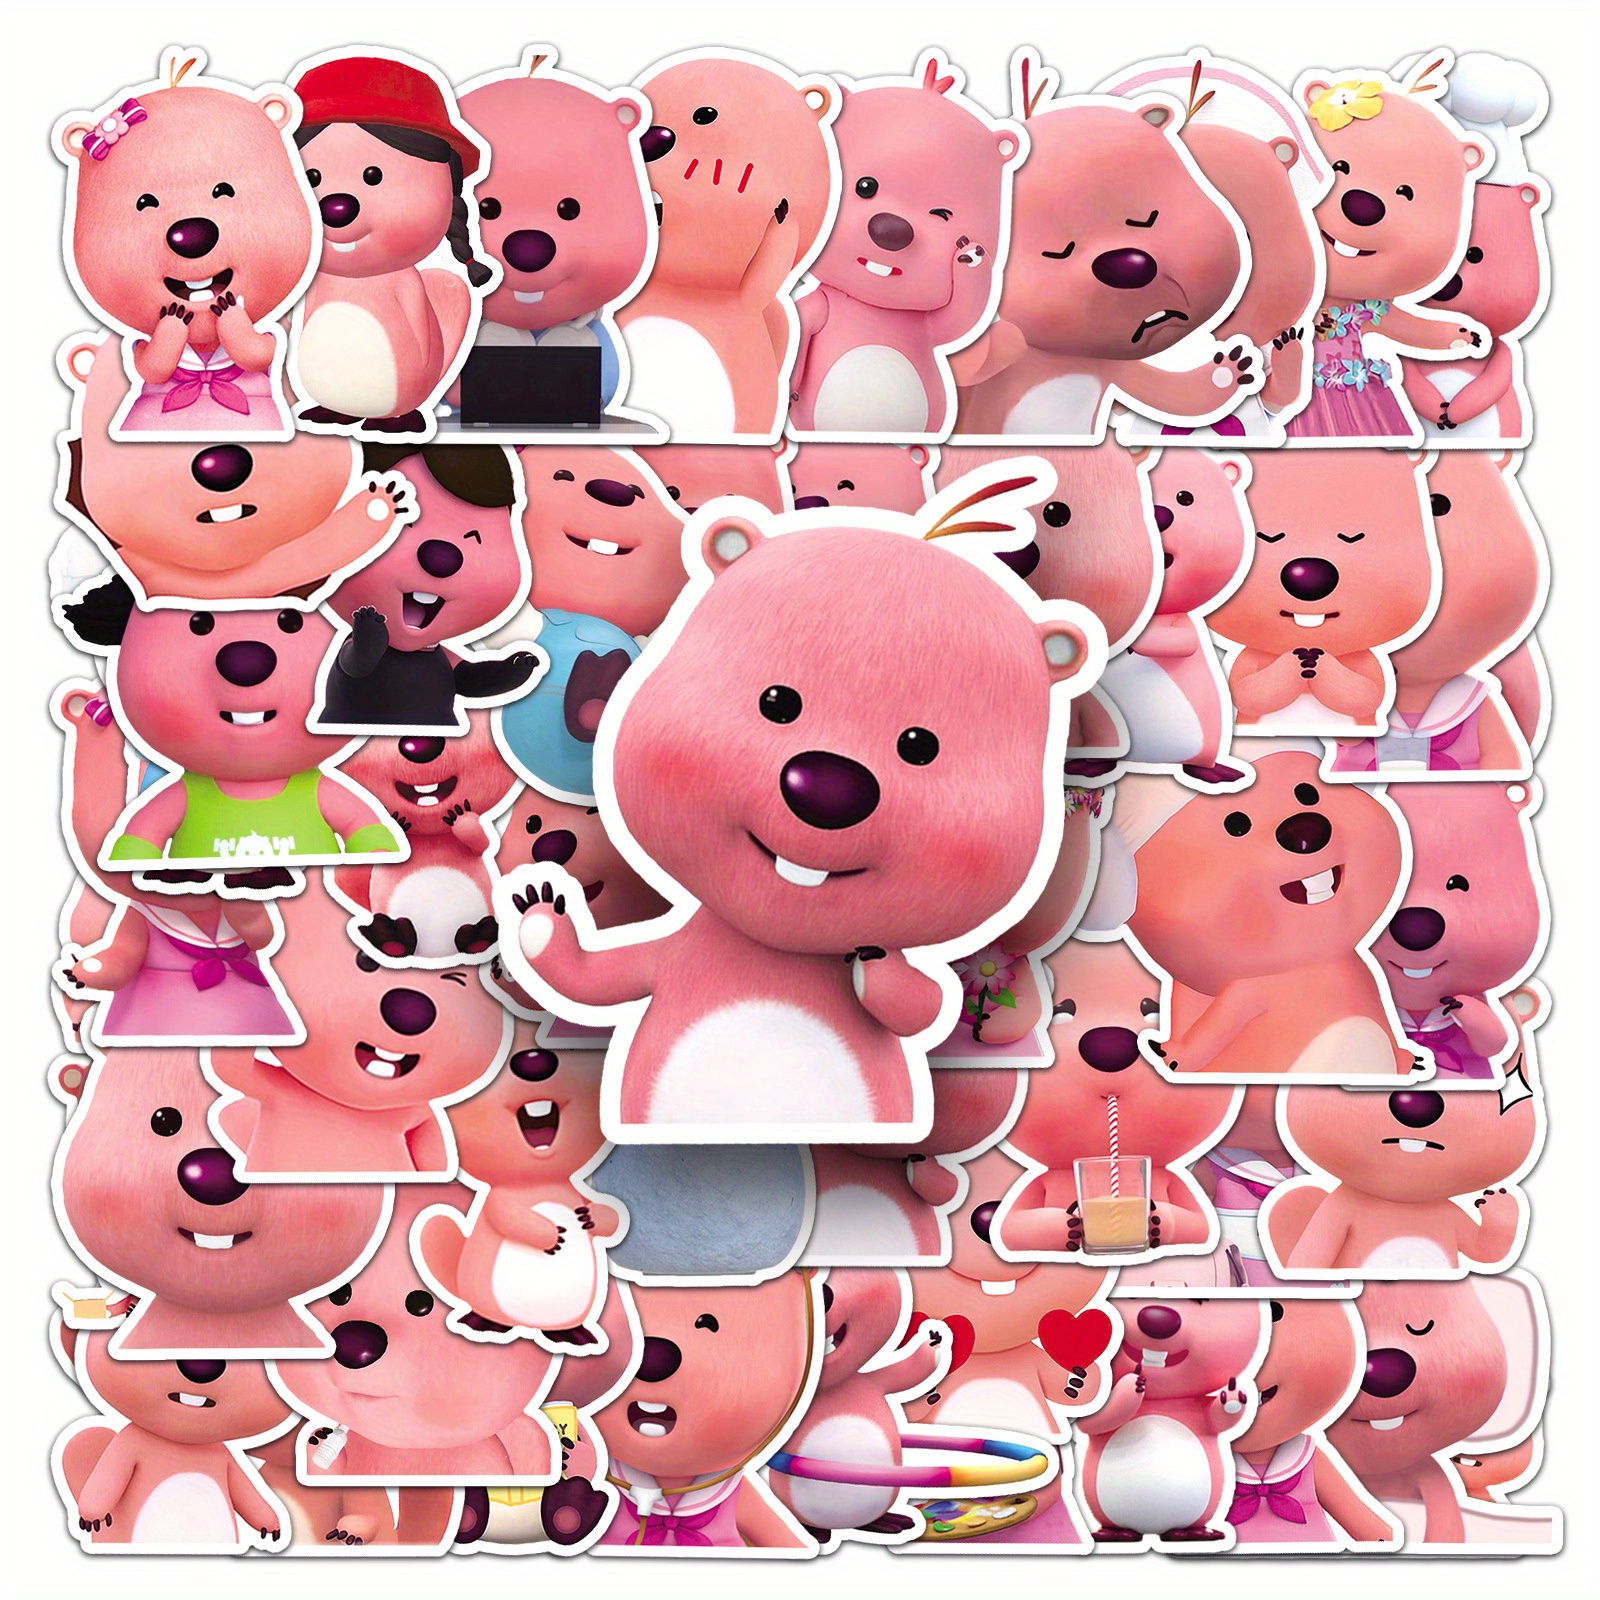 New 63 Cute Cartoon Loopy Little Beaver Stickers Cute Ruby Little